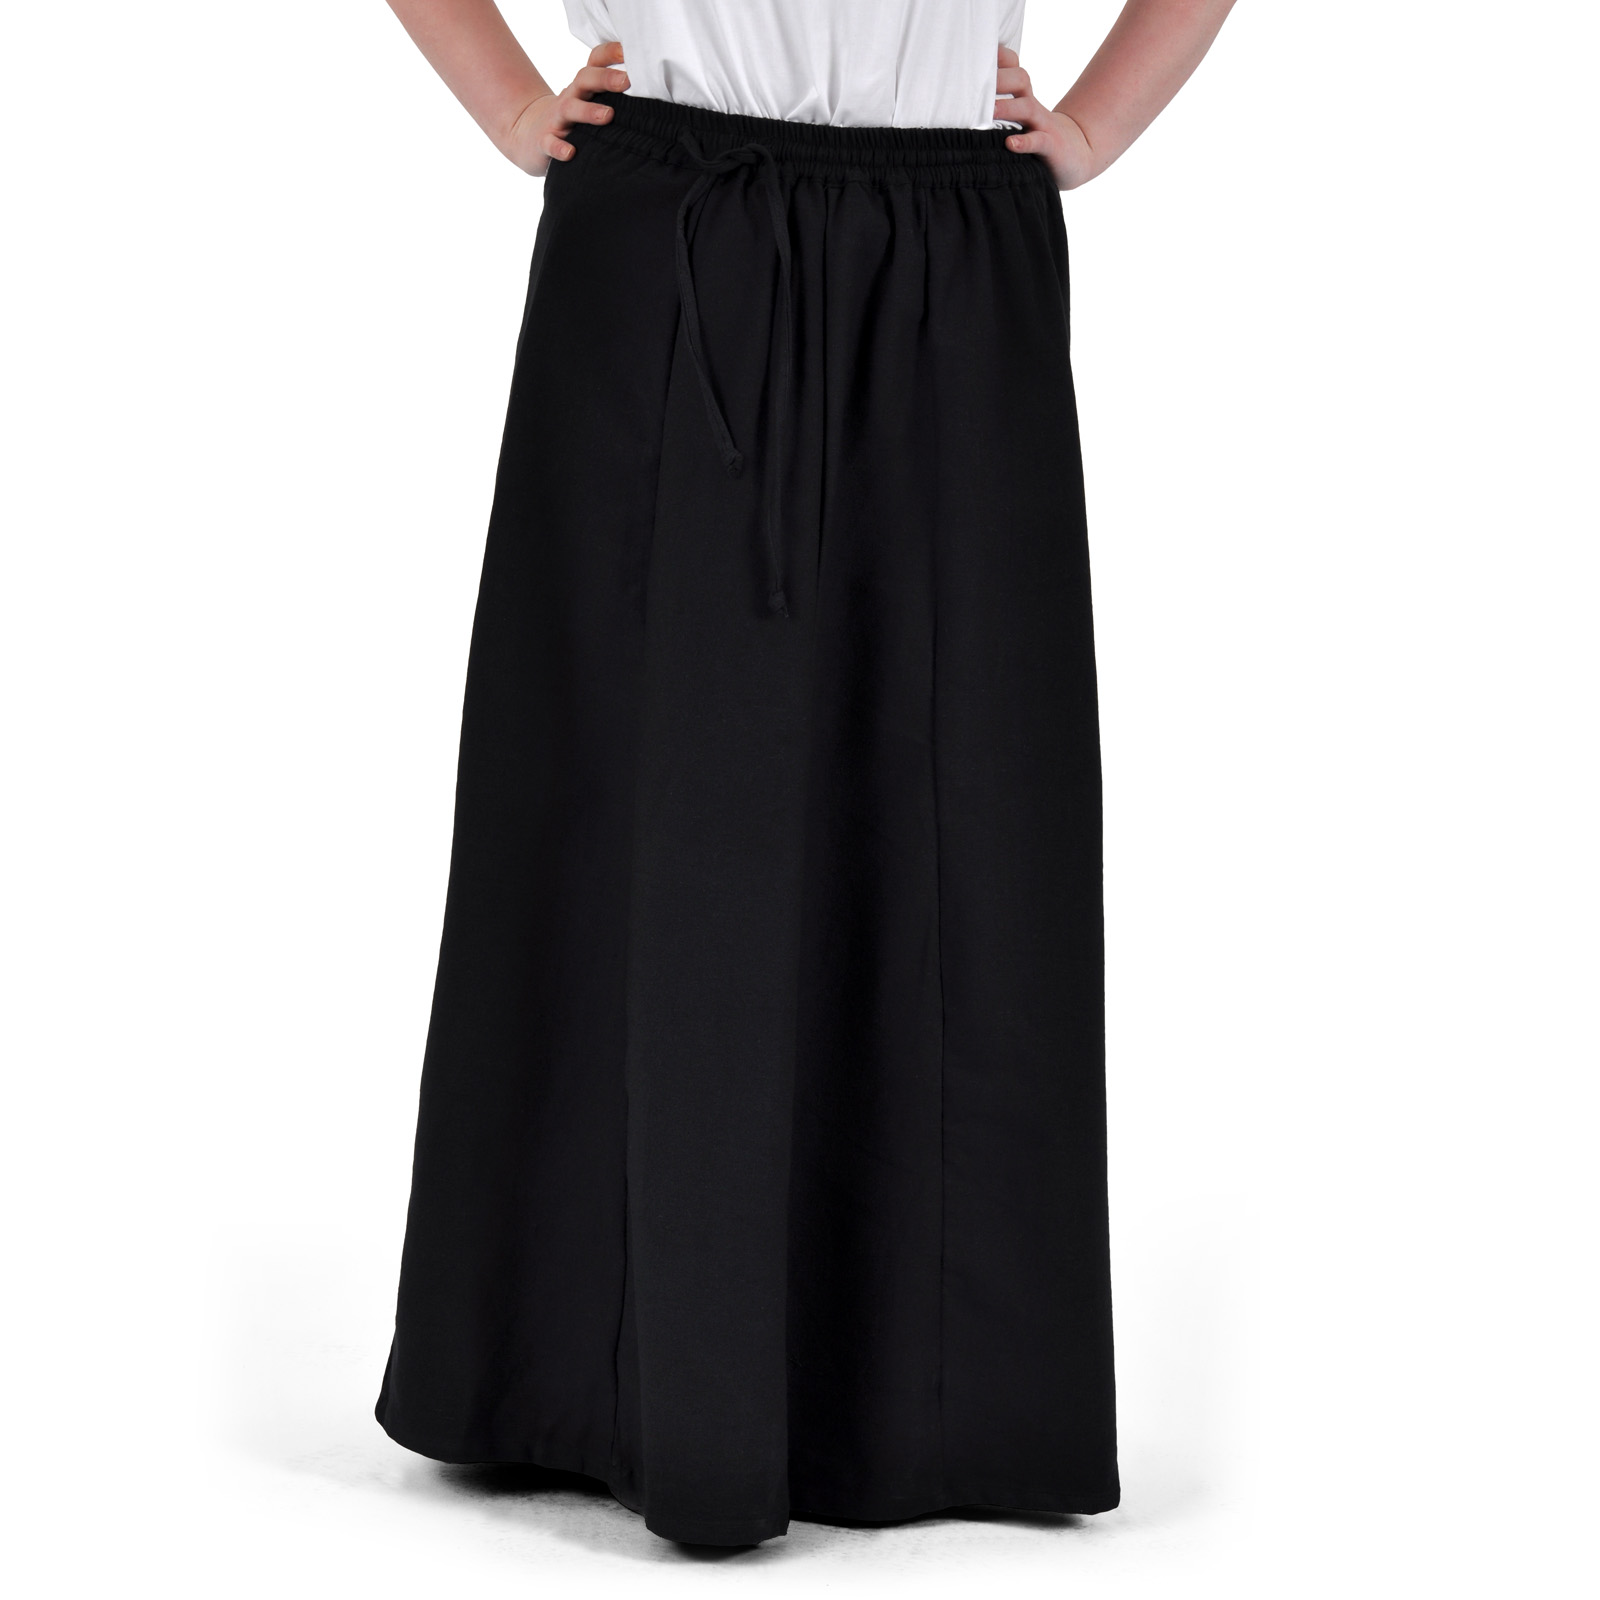 Judith - Black Skirt